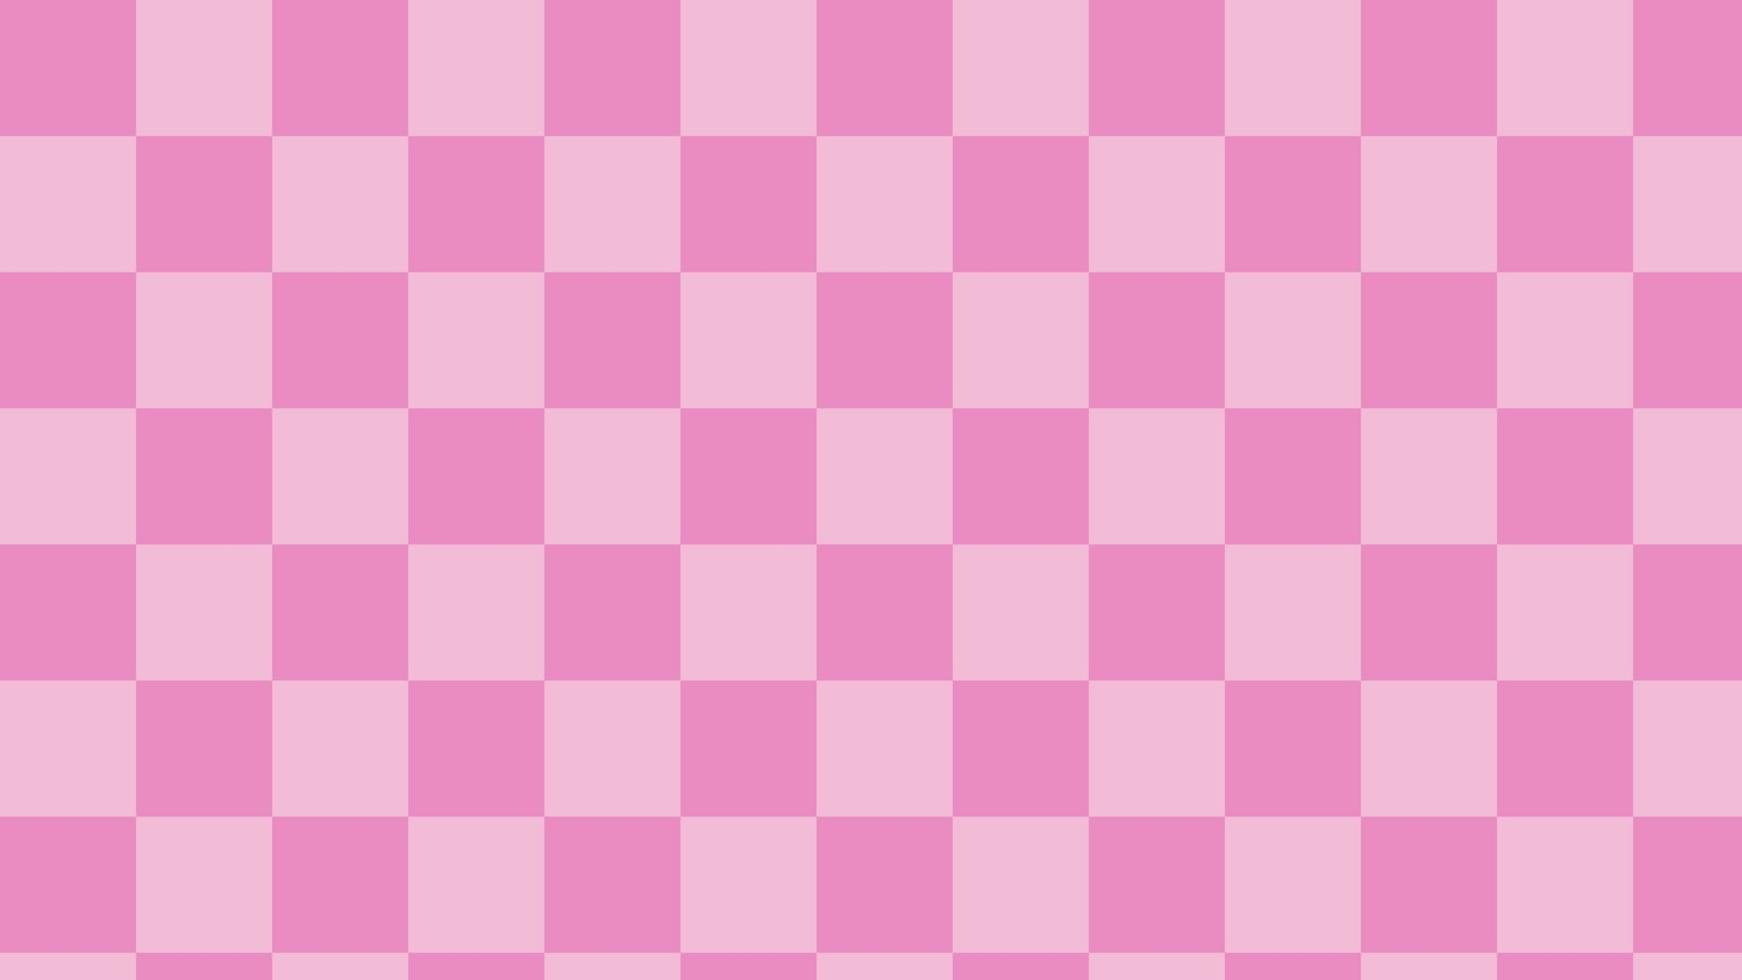 xadrez rosa cameo, guingão, xadrez, fundo padrão tartan, perfeito